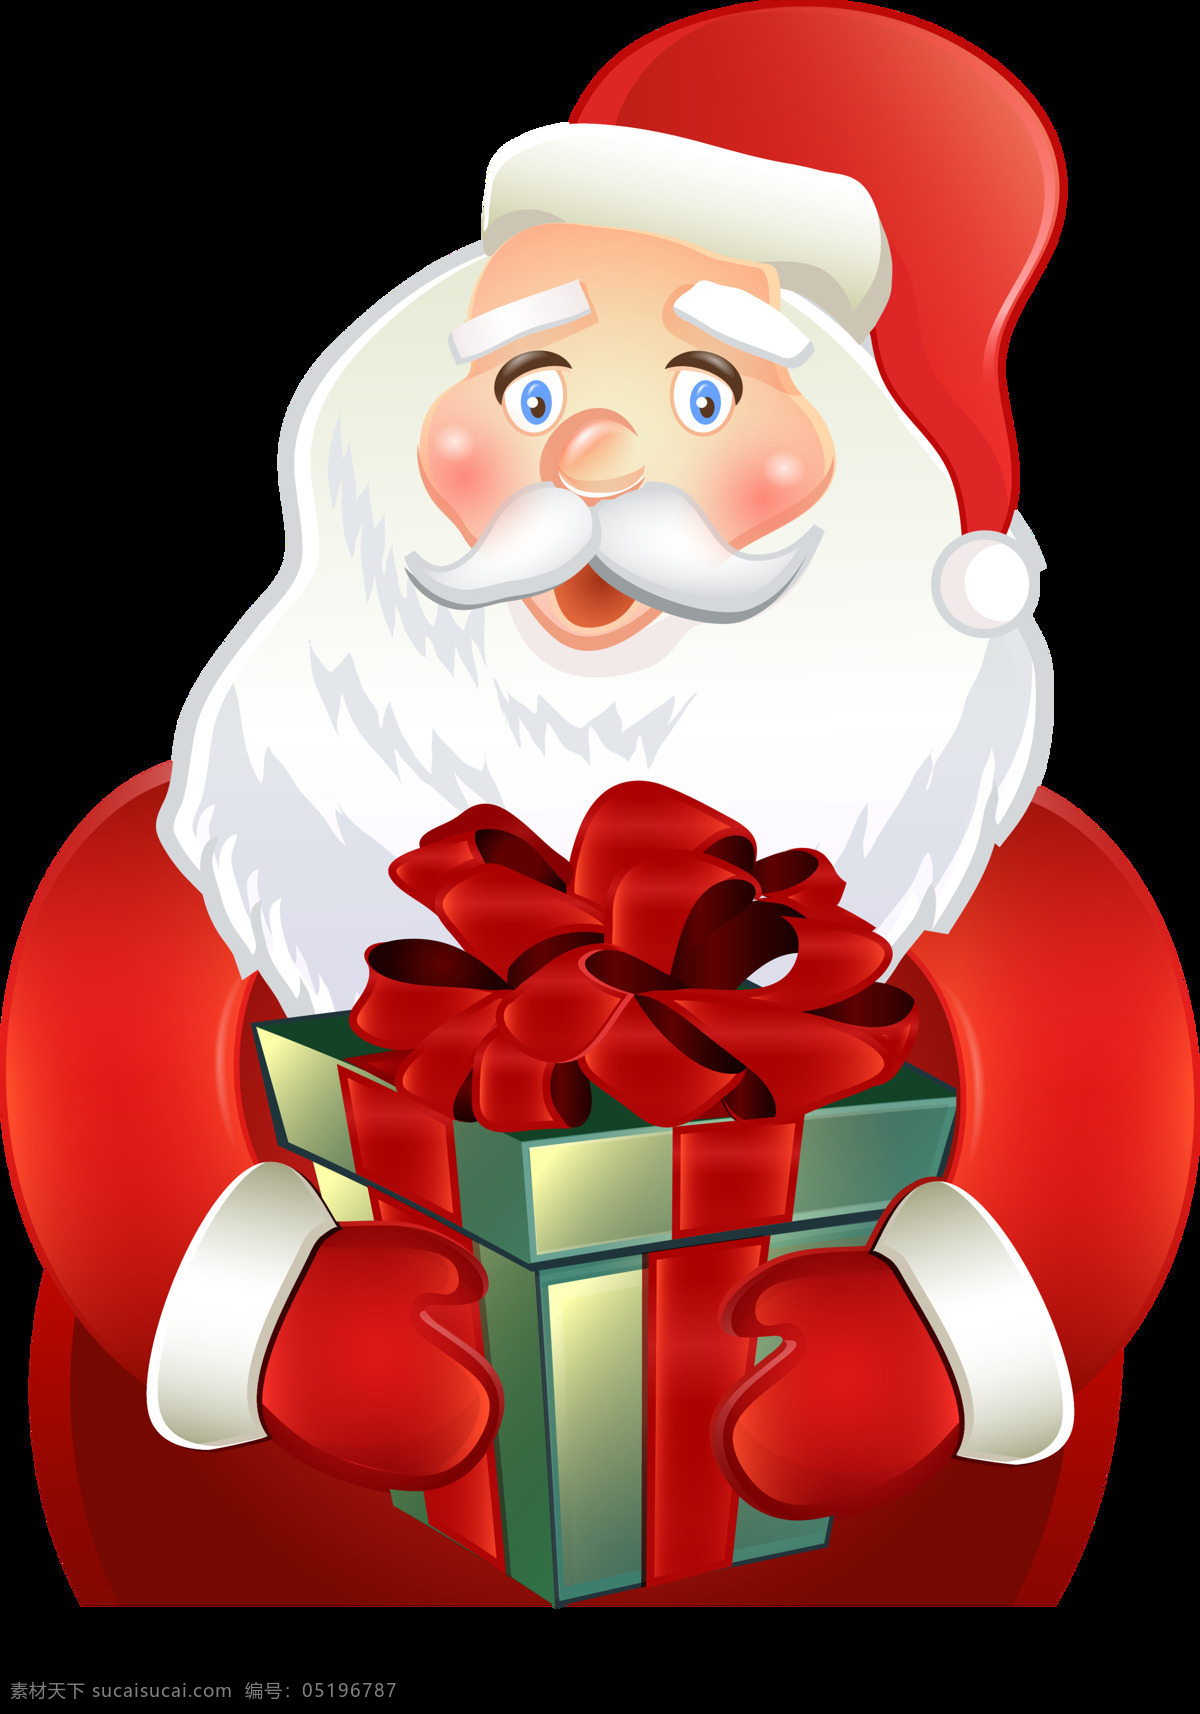 圣诞老人 送礼 物 元素 png元素 白胡子 儿童 红色 老人 礼品 免抠元素 圣诞 透明素材 烟囱